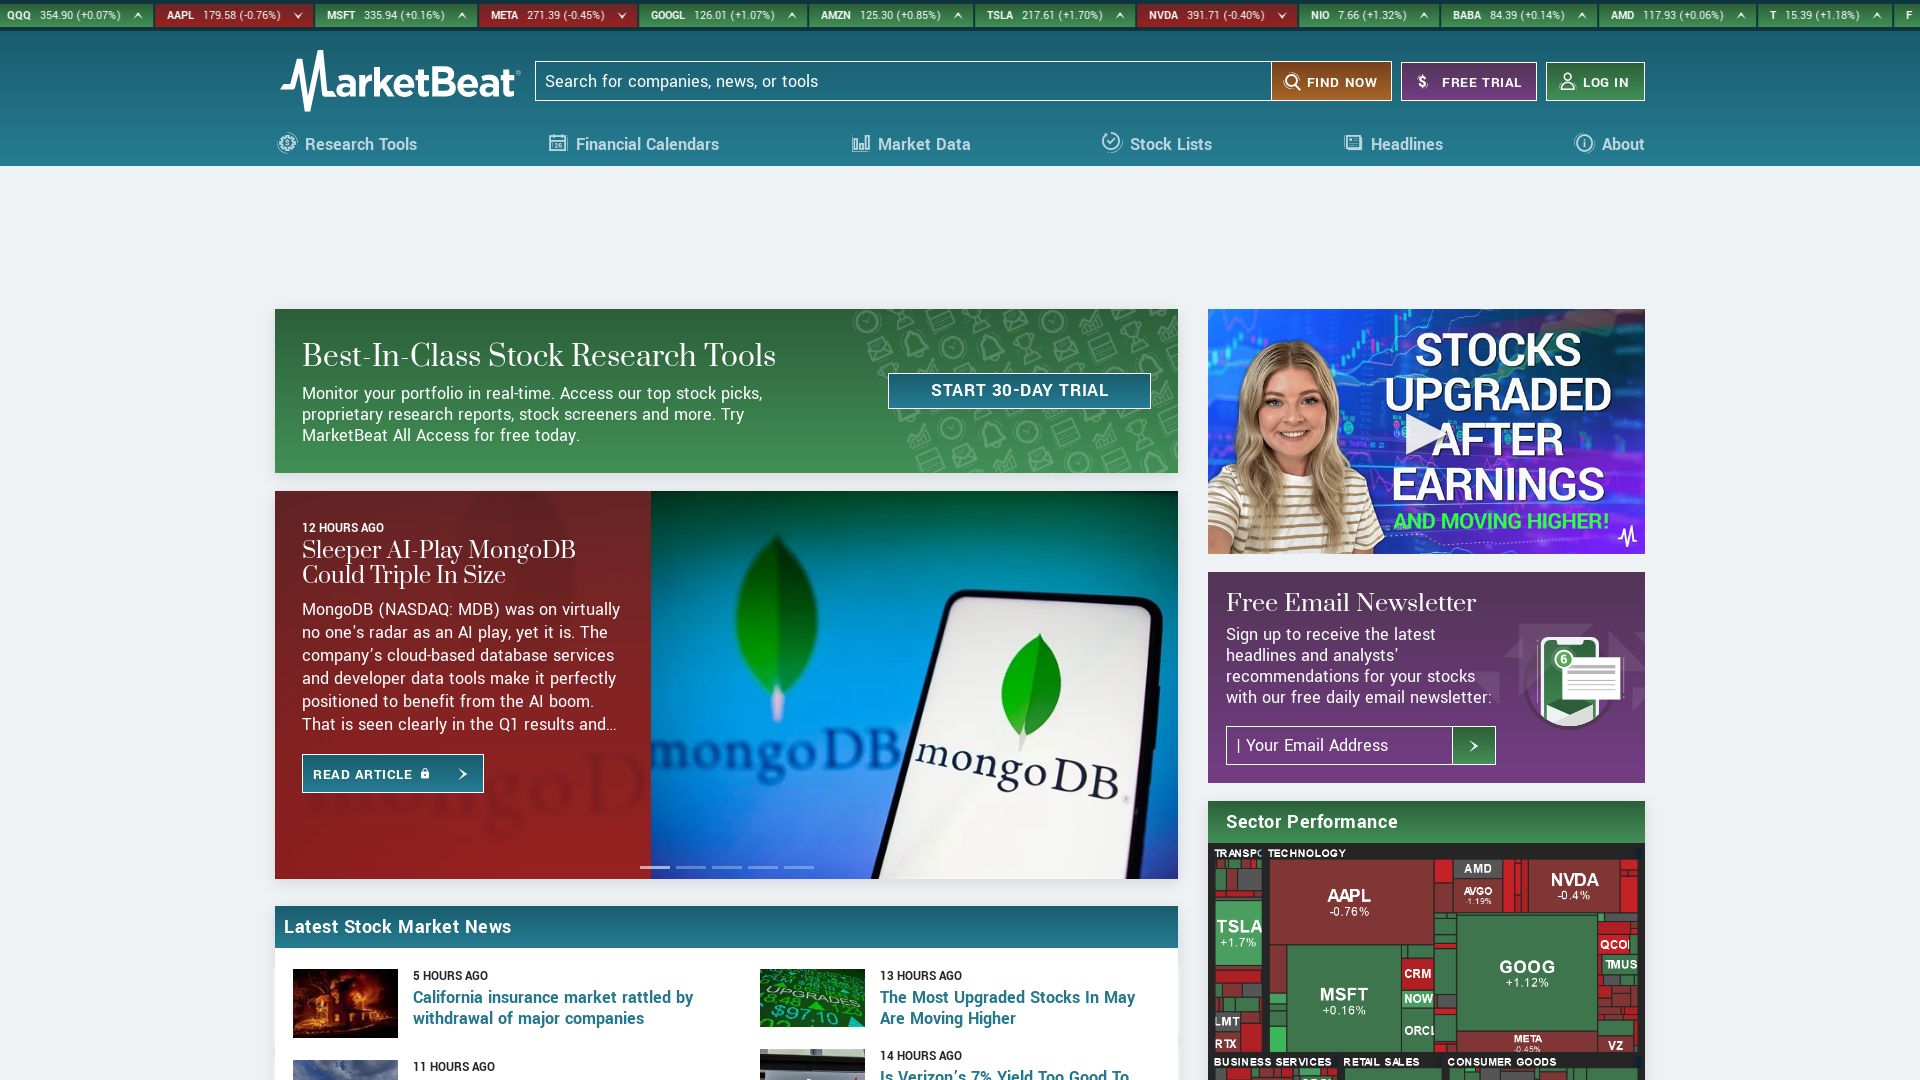 Stato del sito web marketbeat.com è   ONLINE